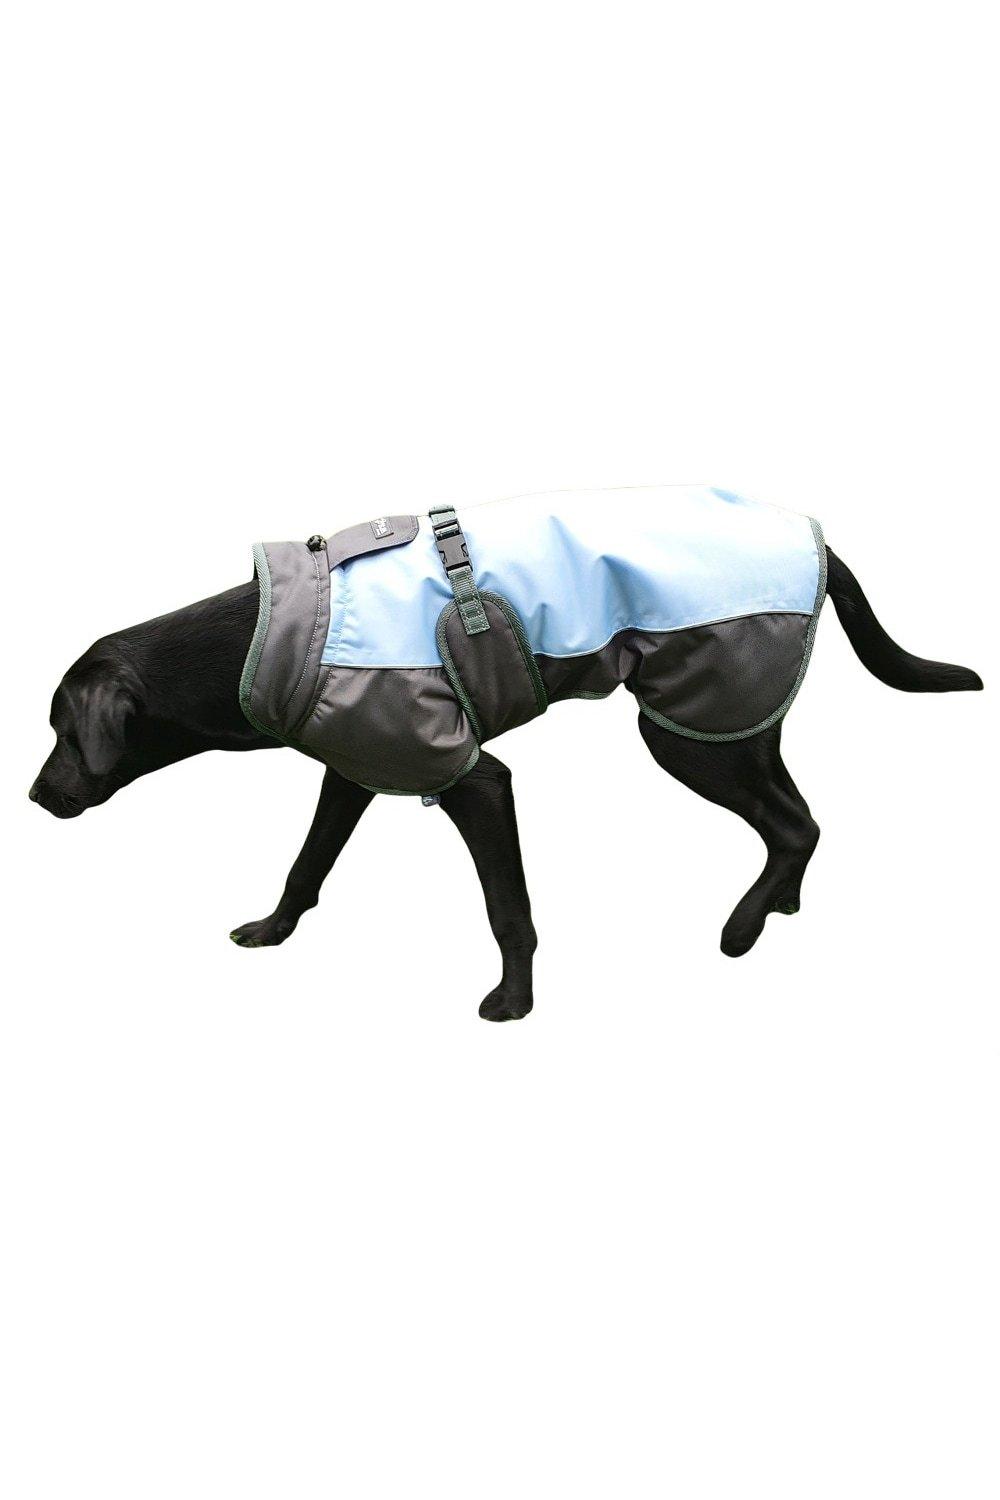 Waterproof Dog Coat